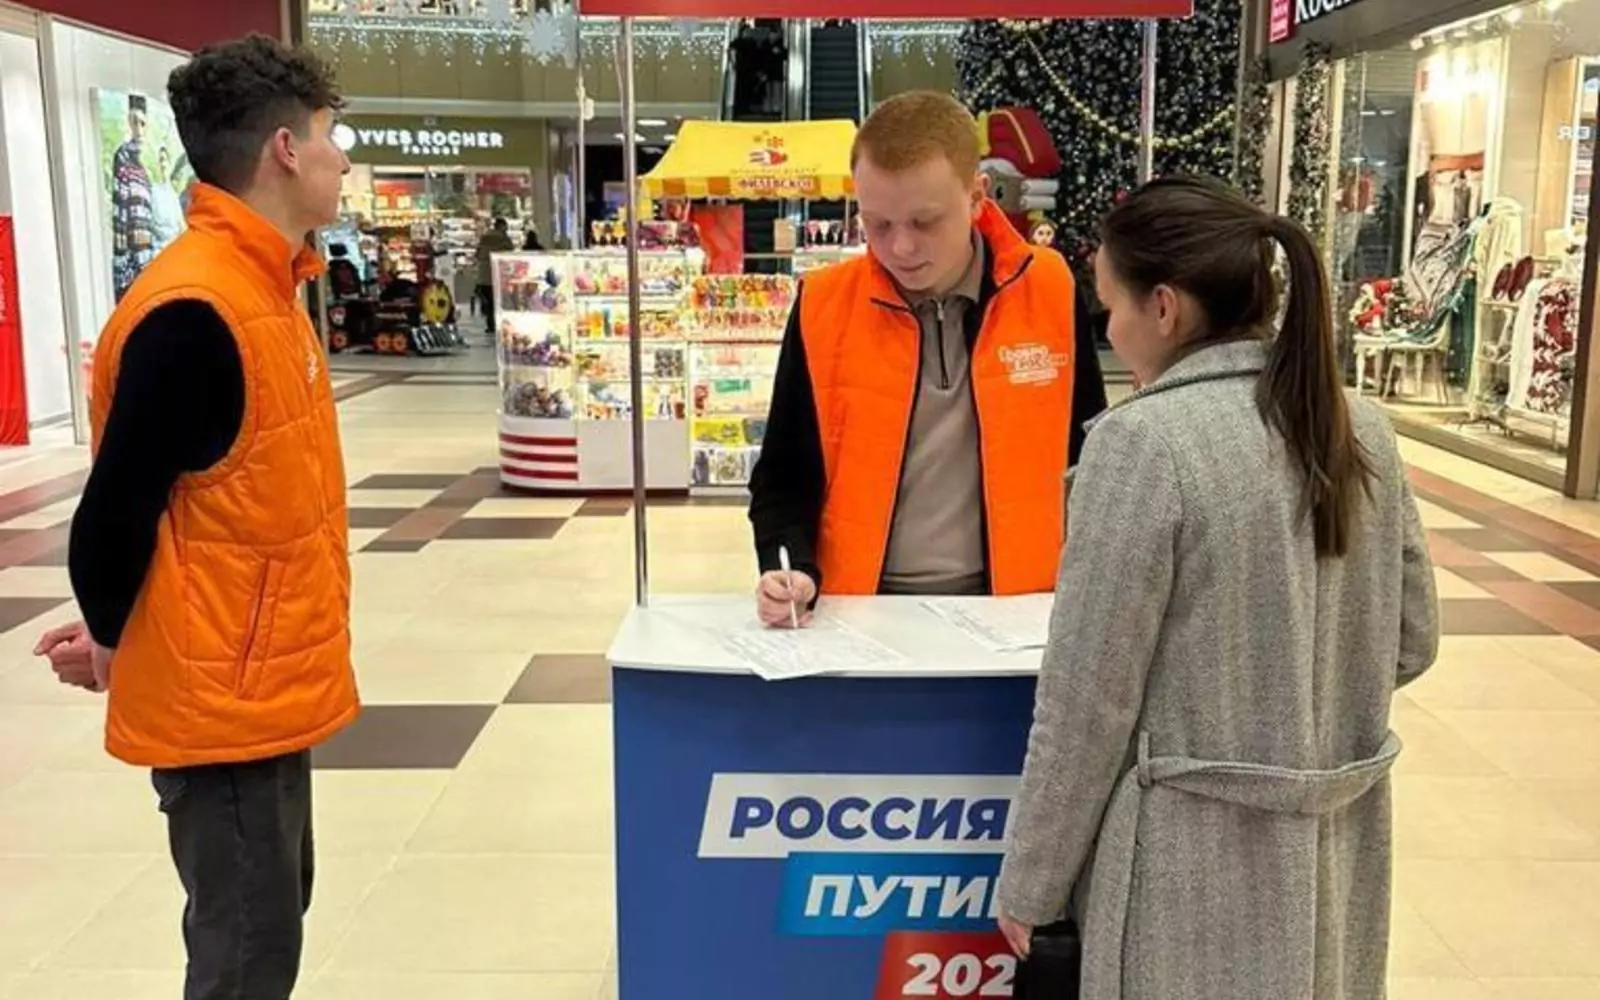 В Армавире начался сбор подписей в поддержку Владимира Путина